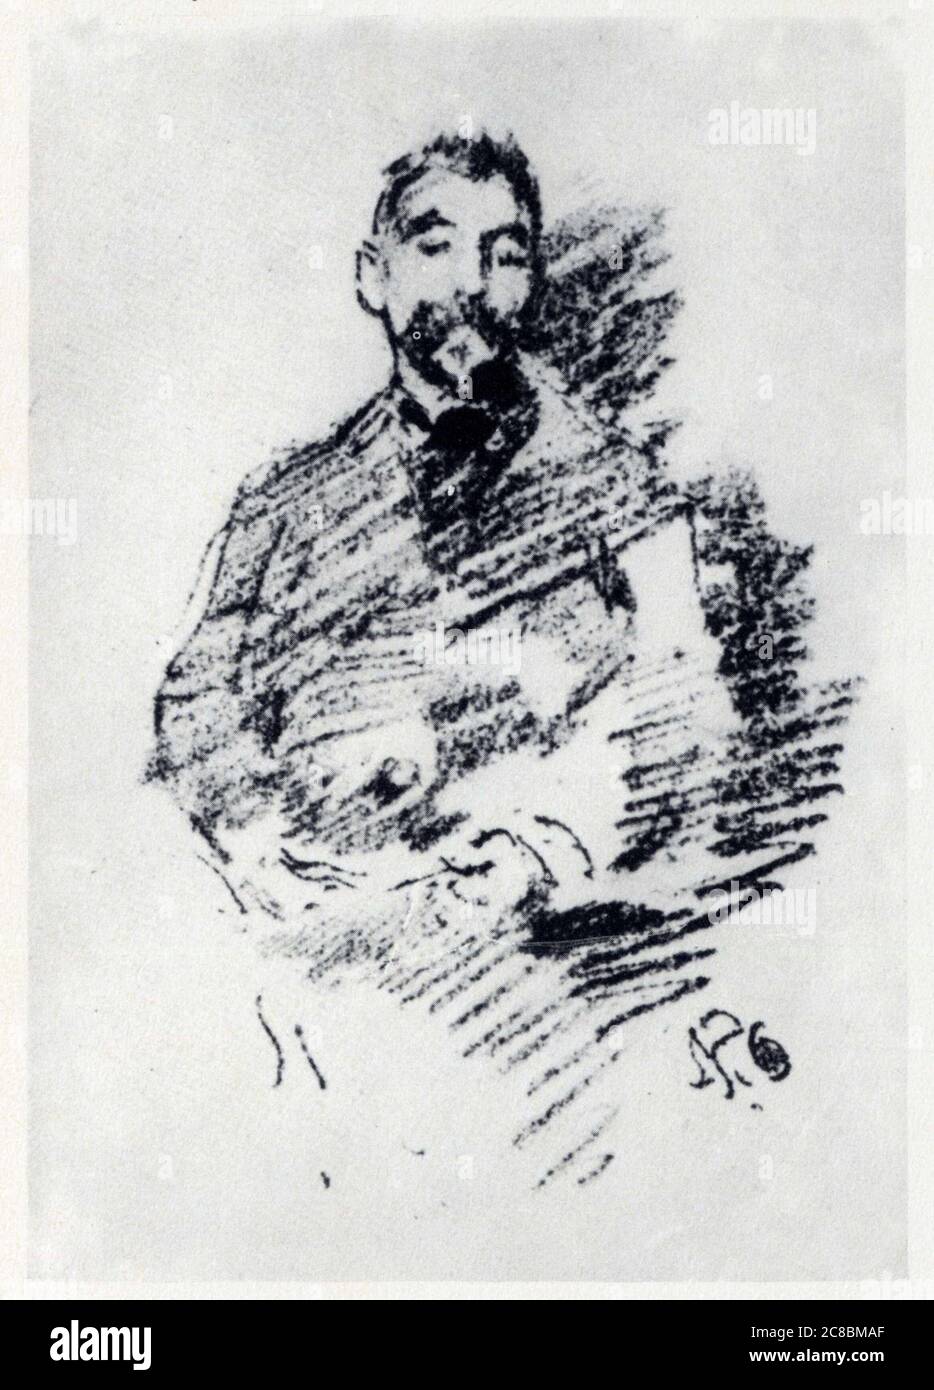 james abbott whistler.(1834-1903).portrait de stéphane mallarmé.dessin pour vers et prose.1889. Banque D'Images